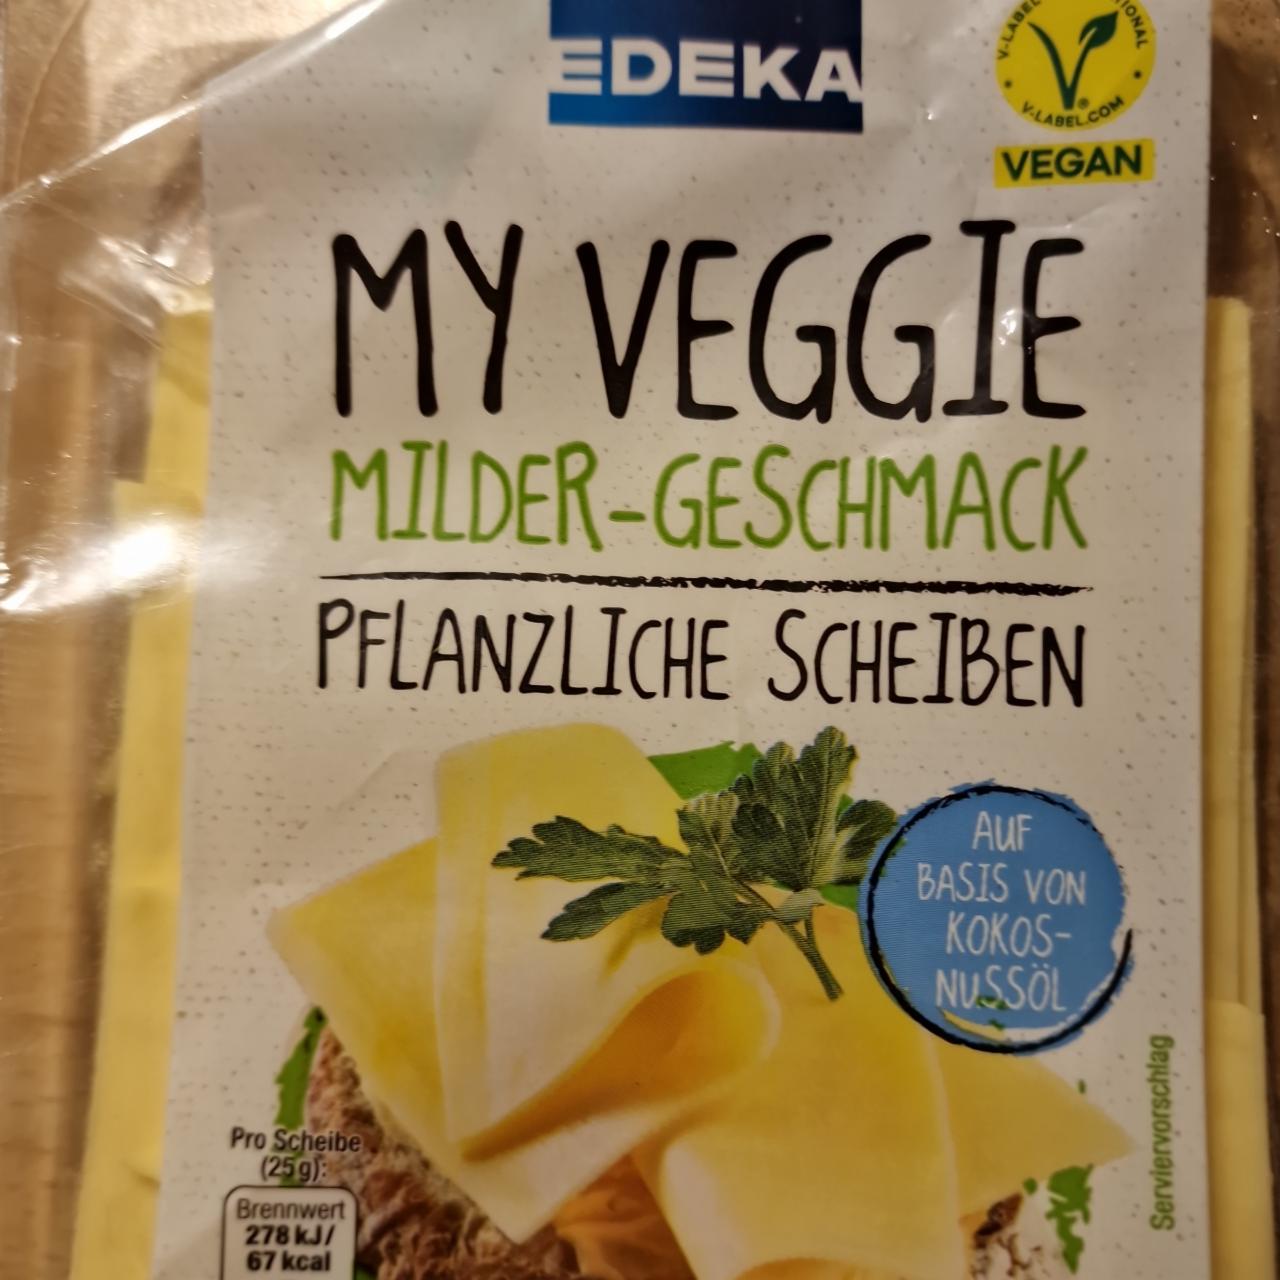 Fotografie - My Veggie Milder-Geschmack Pflanzliche Scheiben Edeka